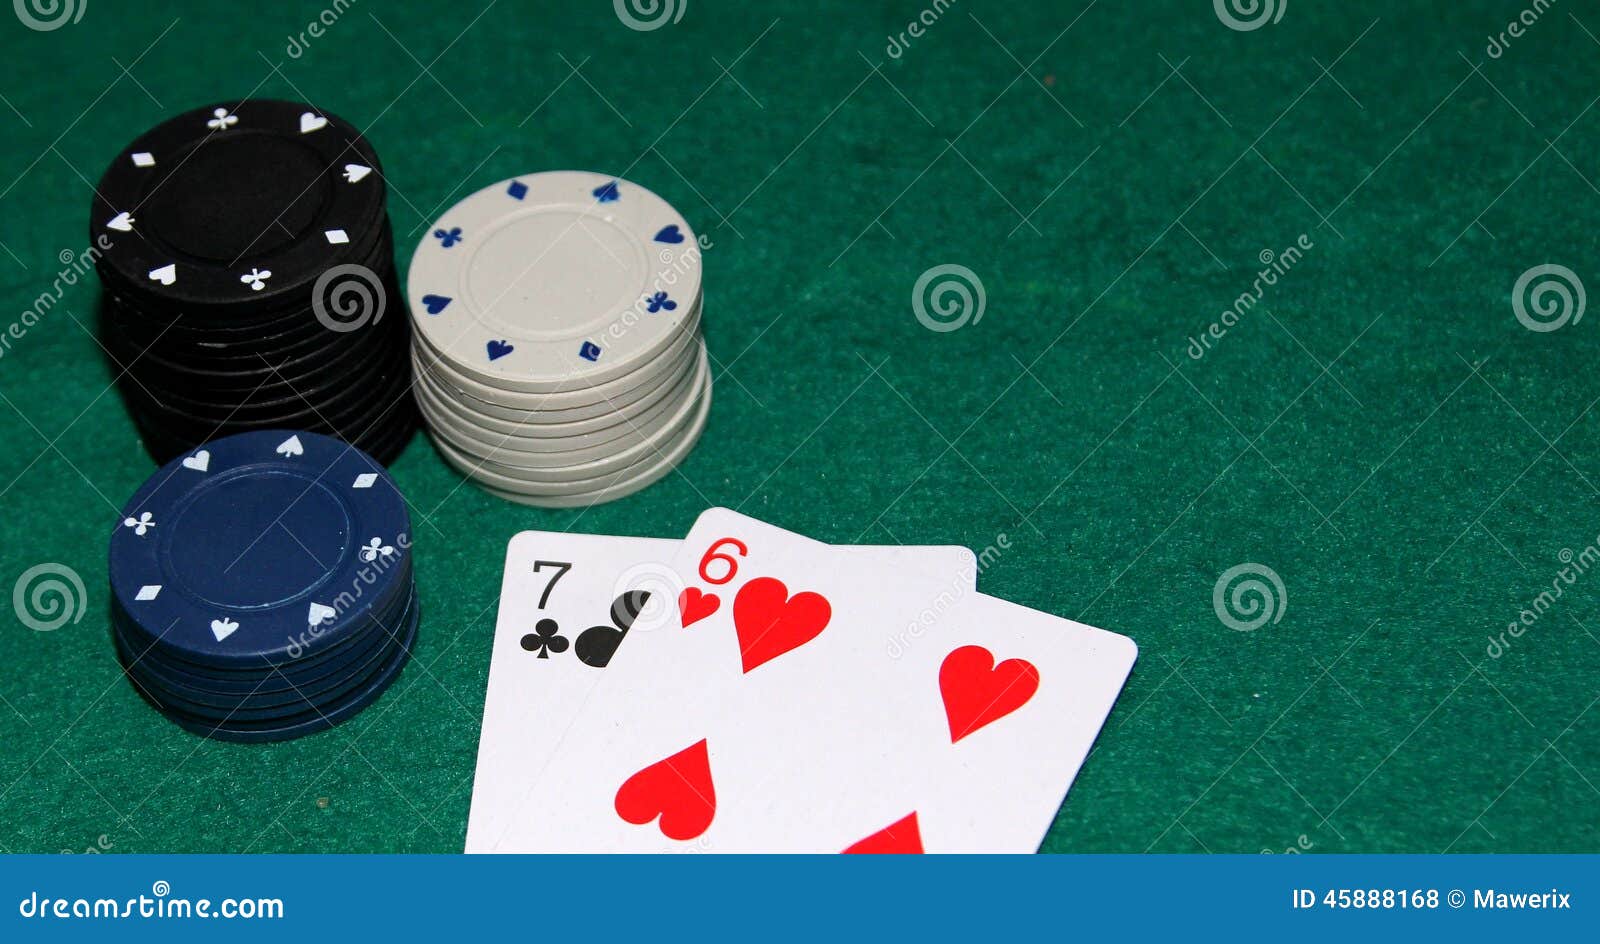 a7 poker